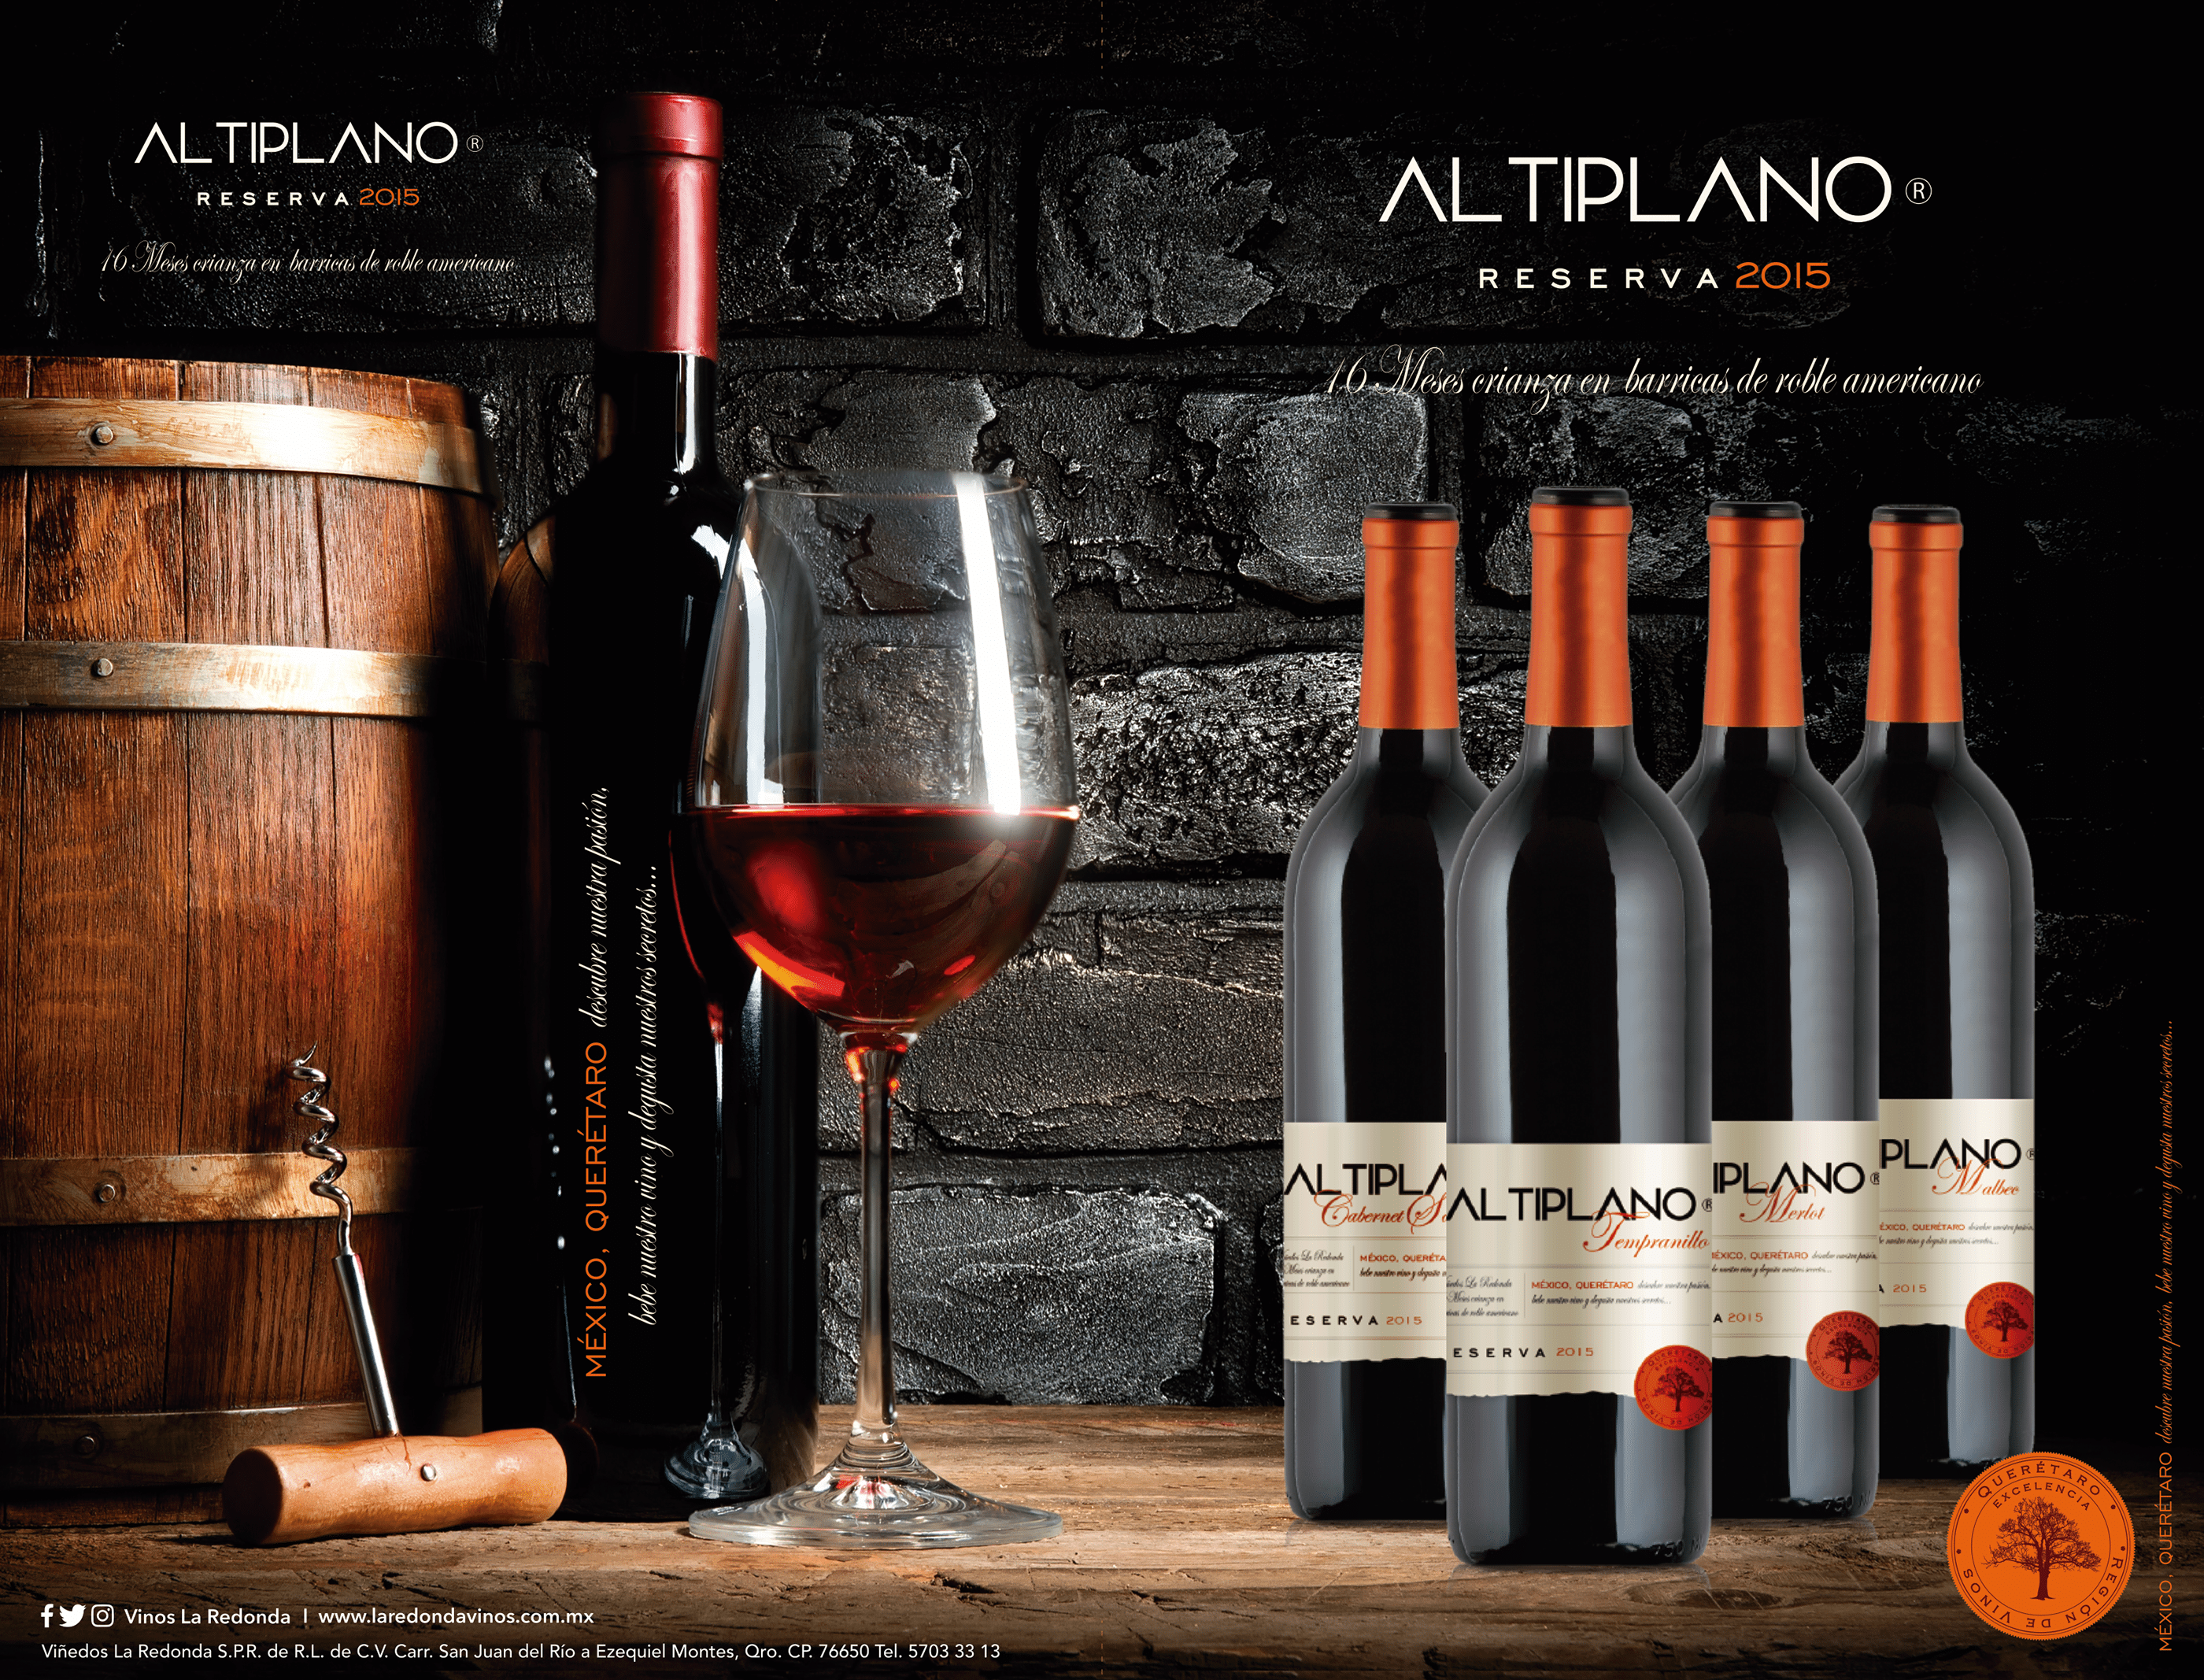 Diseño etiquetas, catálogo y publicidad para vinos on Behanc